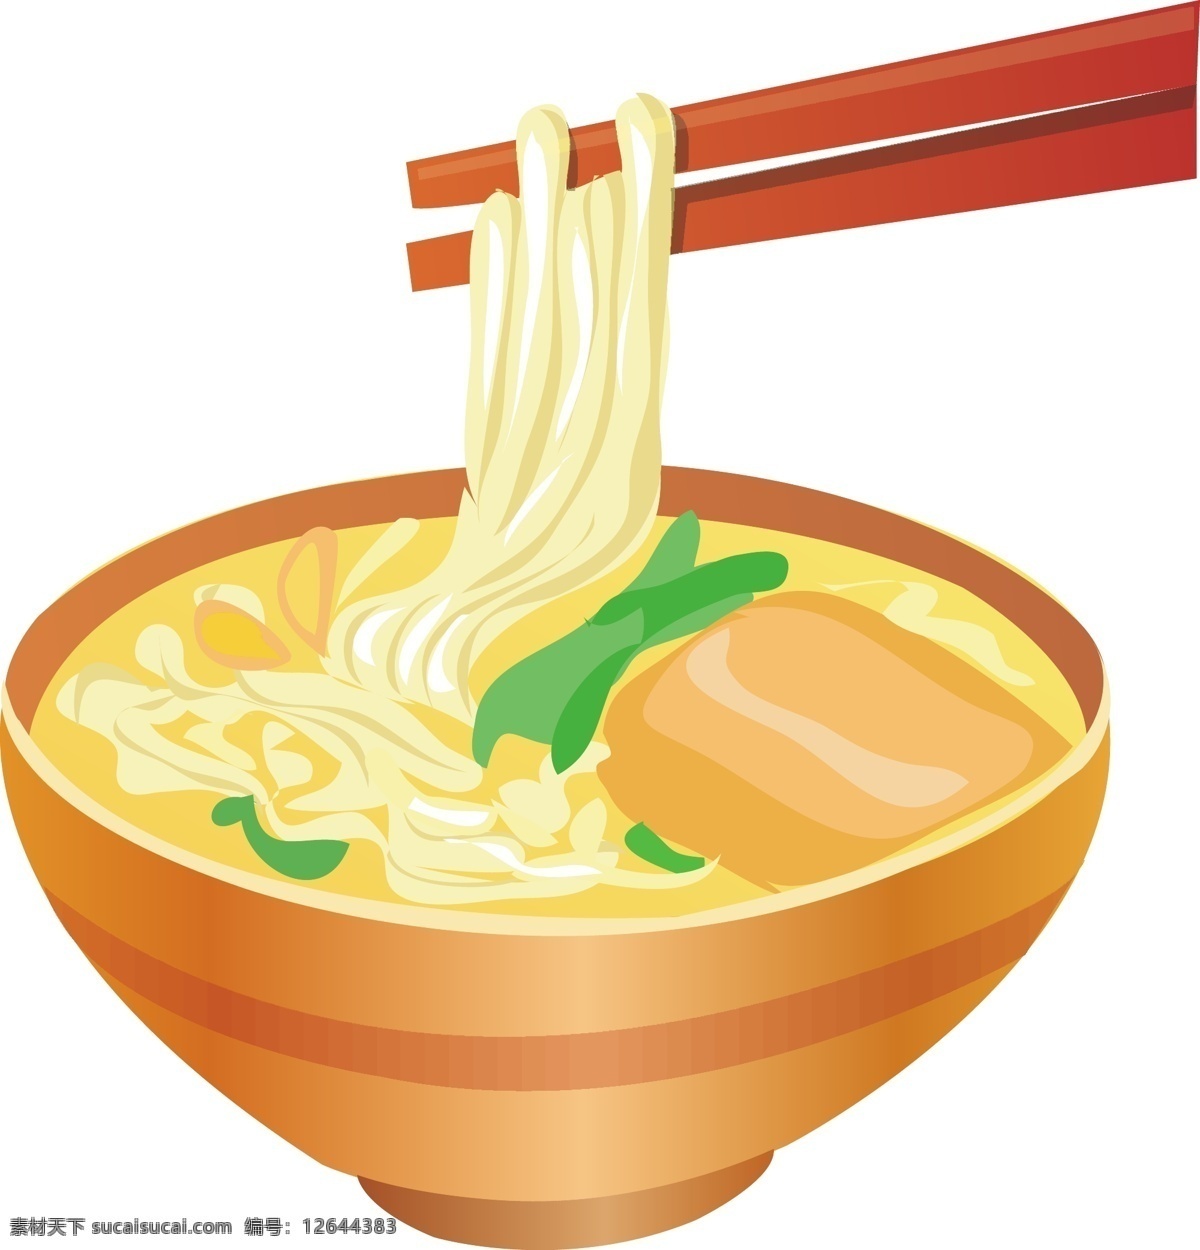 饮食 粉 米粉 筷子 碗 生活百科 餐饮美食